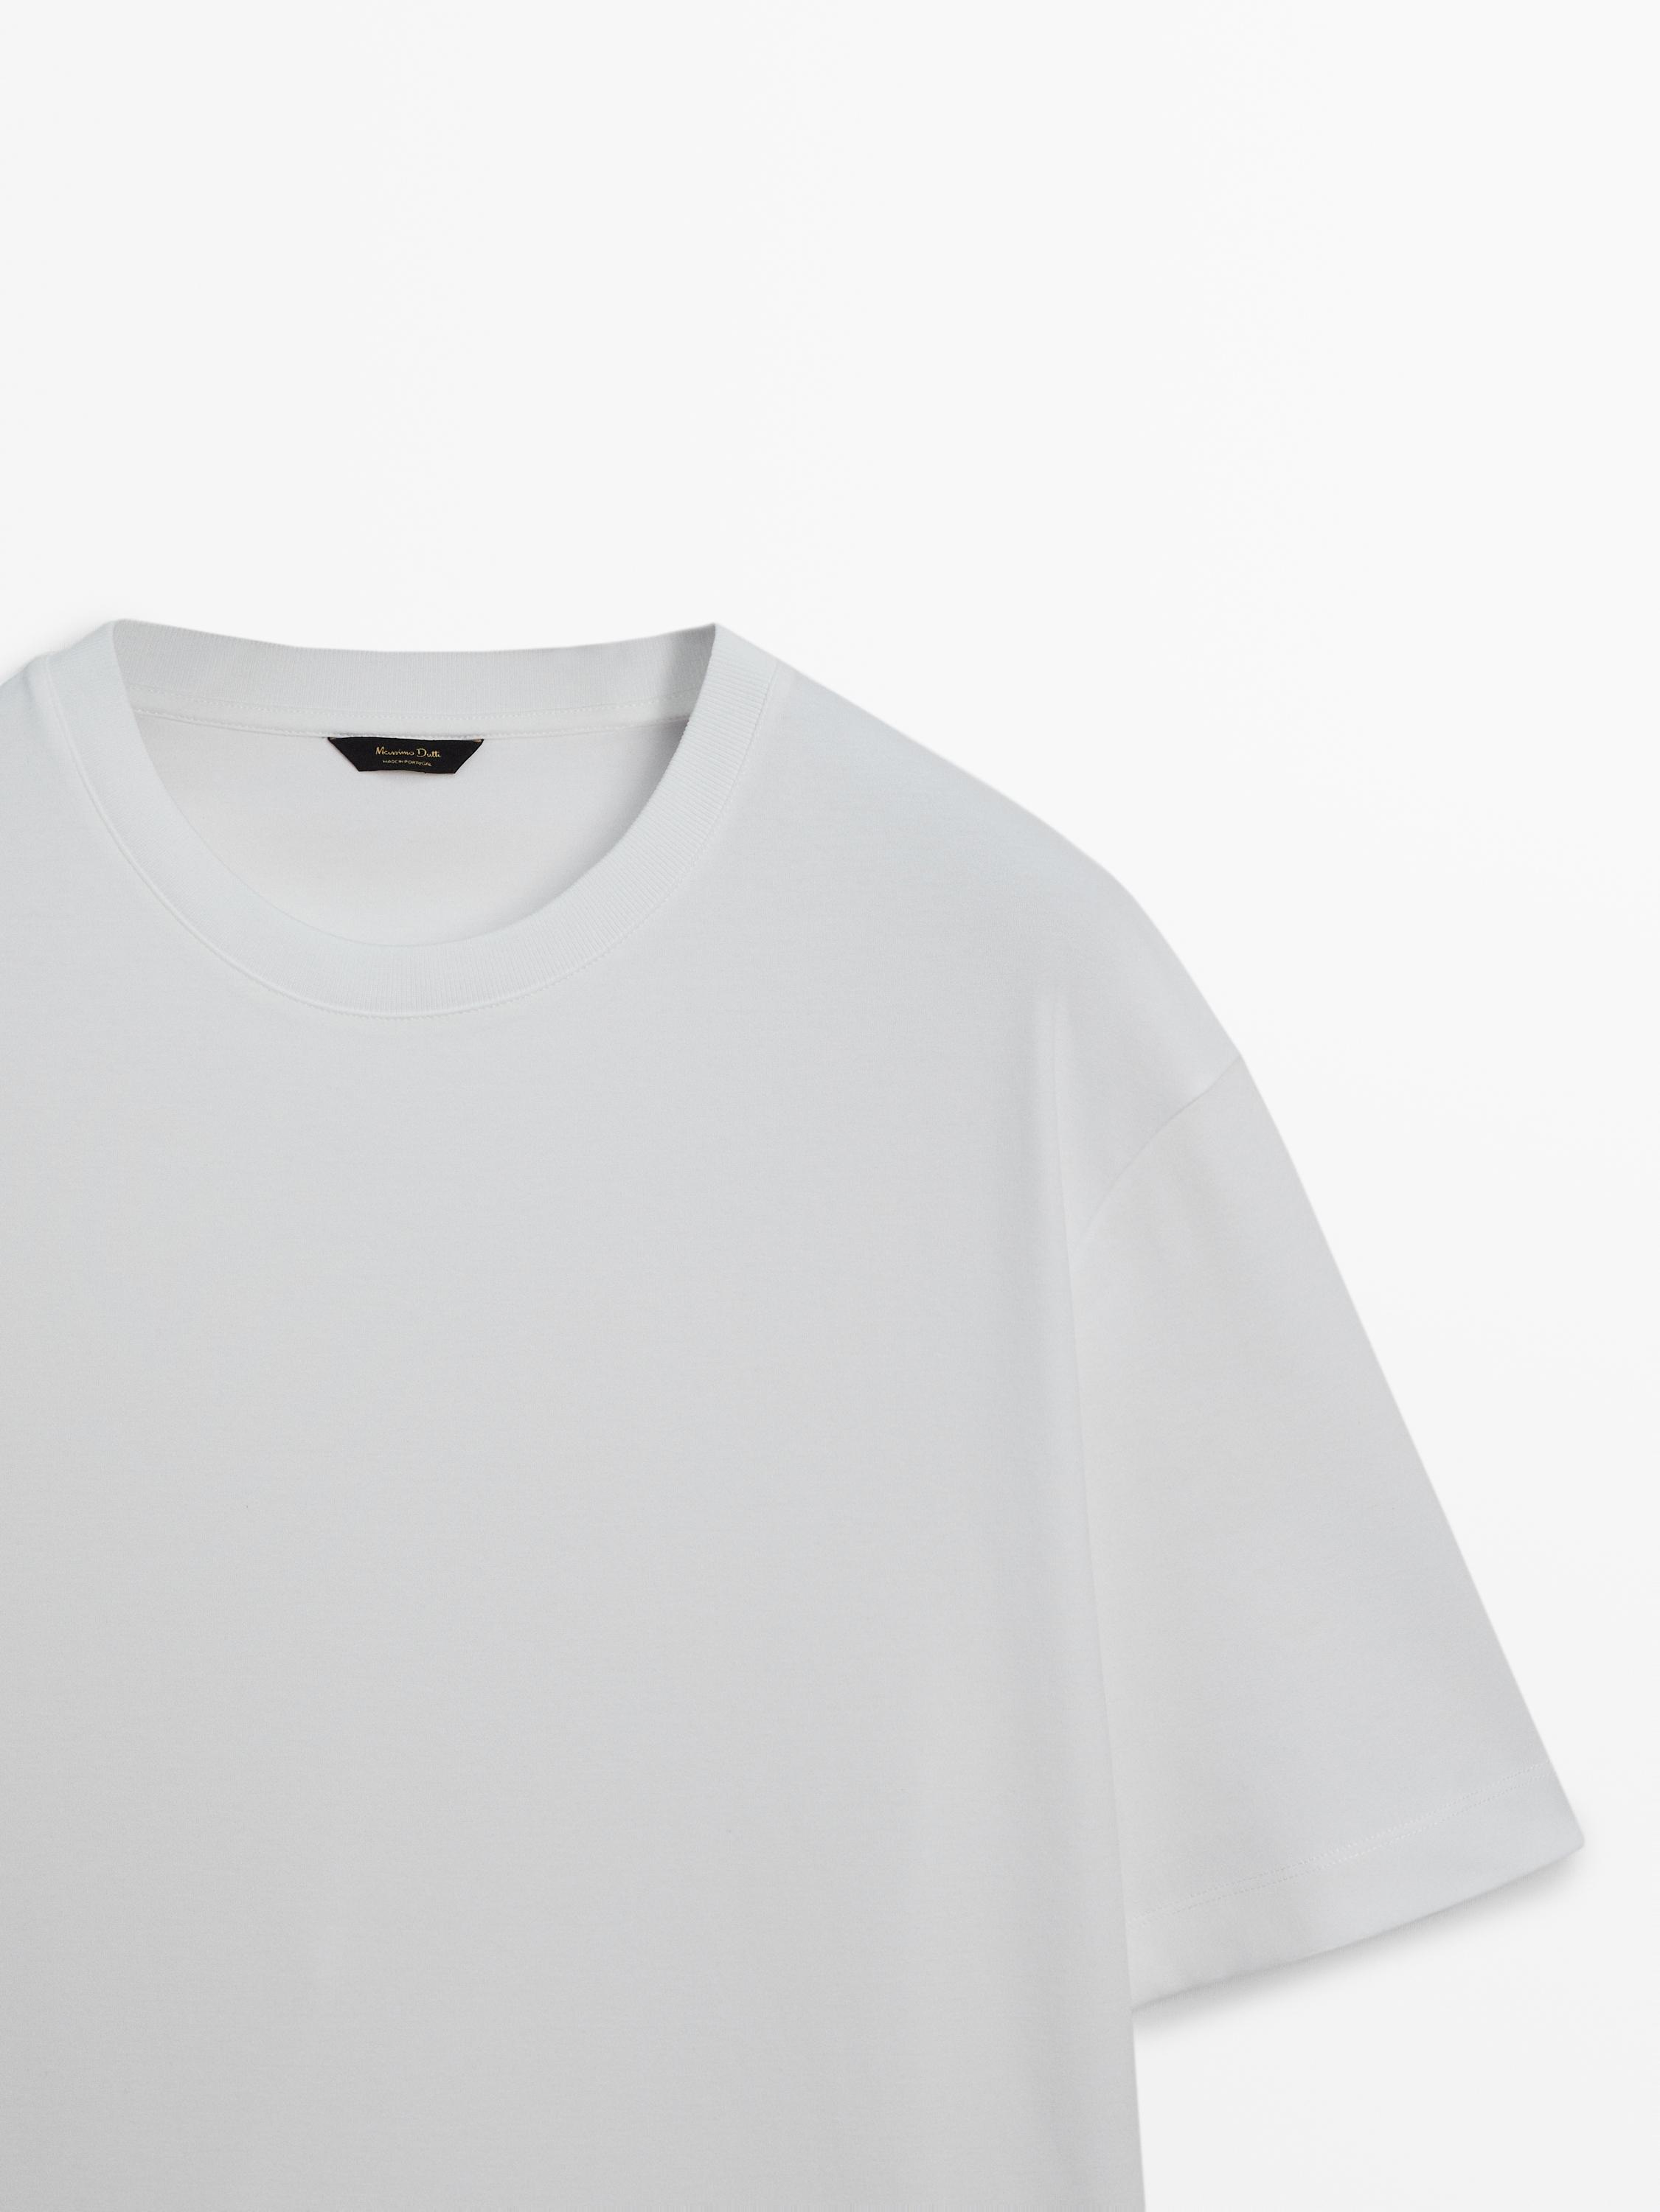 Drop-shoulder cotton T-shirt with a crew neck